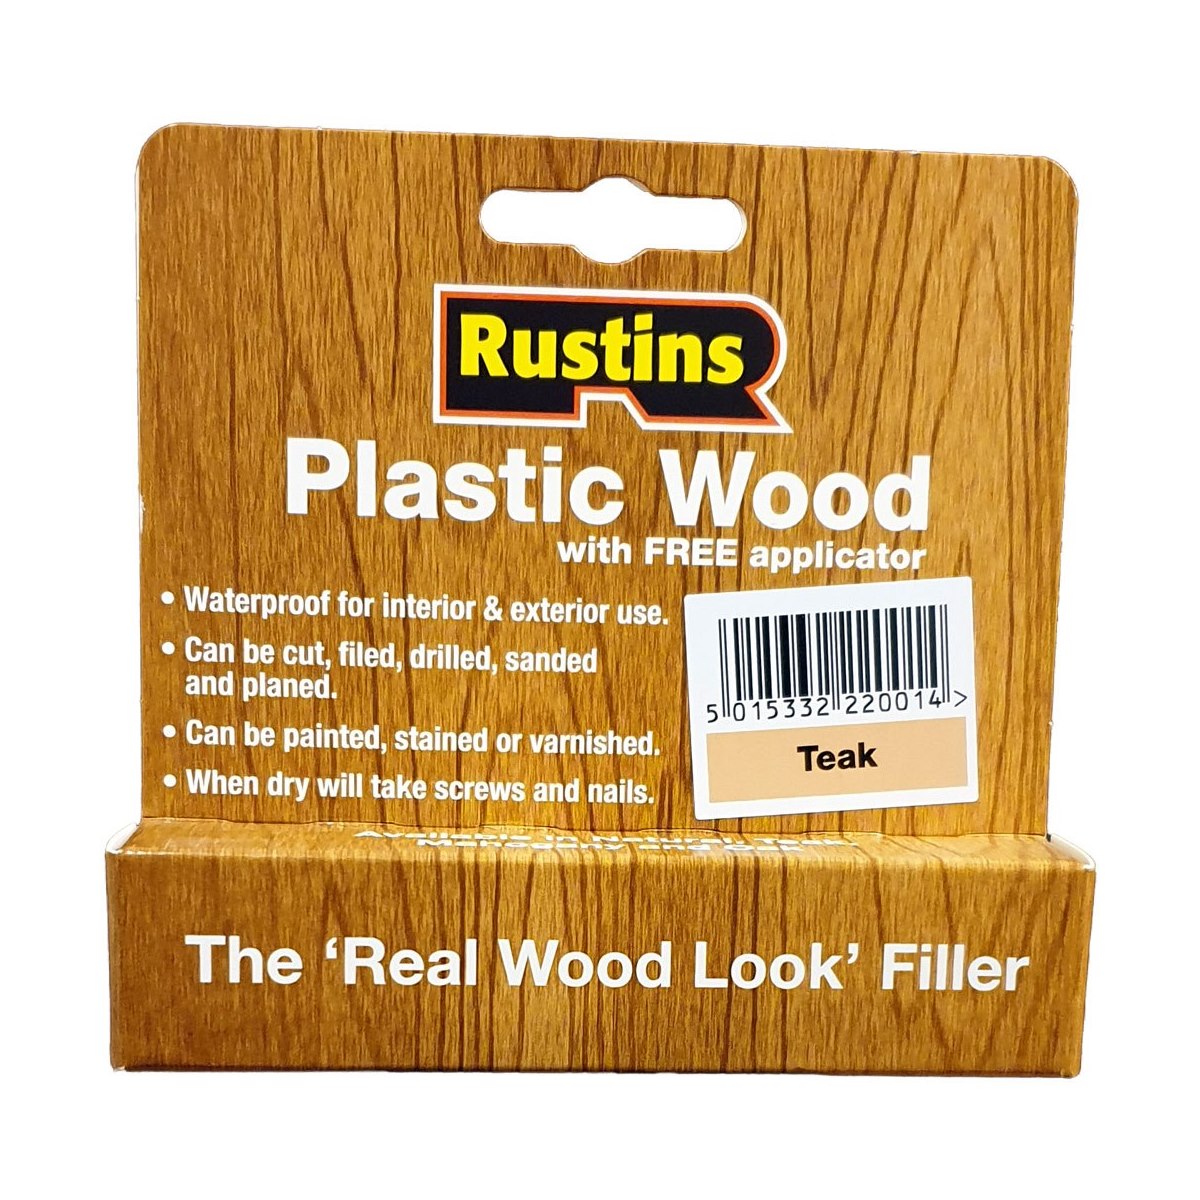 Rustins Plastic Wood Filler Teak 20gm